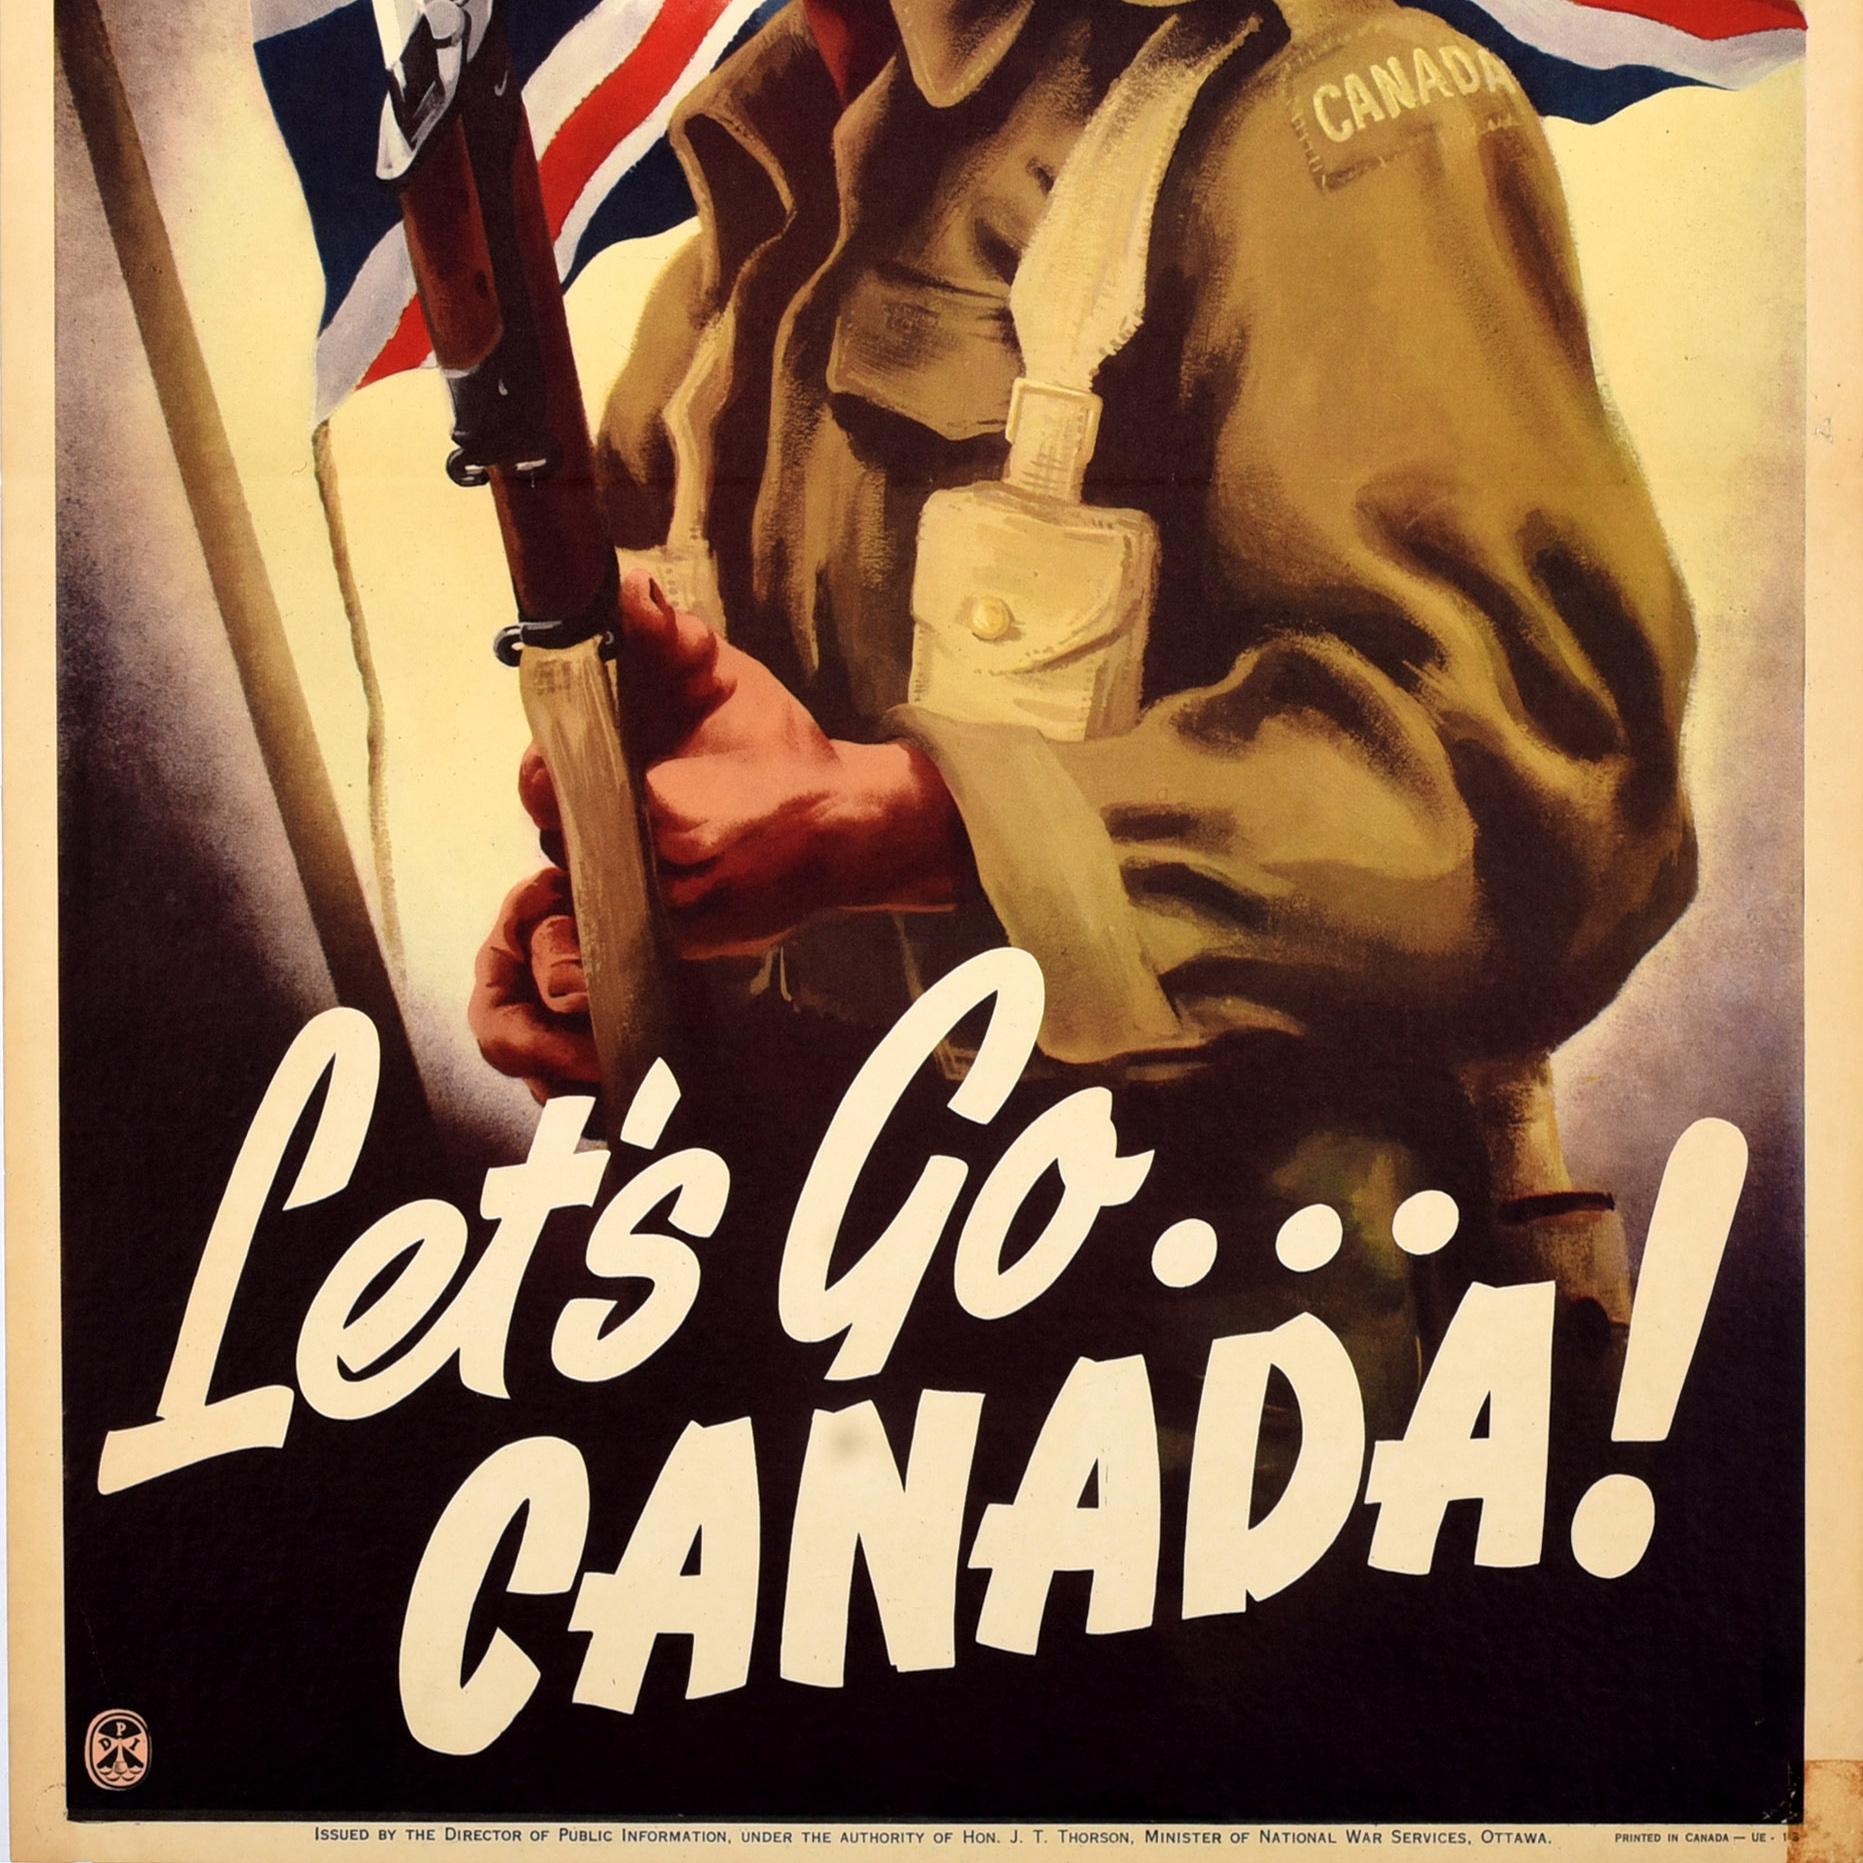 Affiche originale de propagande canadienne de la Seconde Guerre mondiale - Let's Go... Canada ! - publié par le directeur de l'information publique sous l'autorité de l'honorable J.T. Thorson, ministre des Services nationaux de guerre, Ottawa.